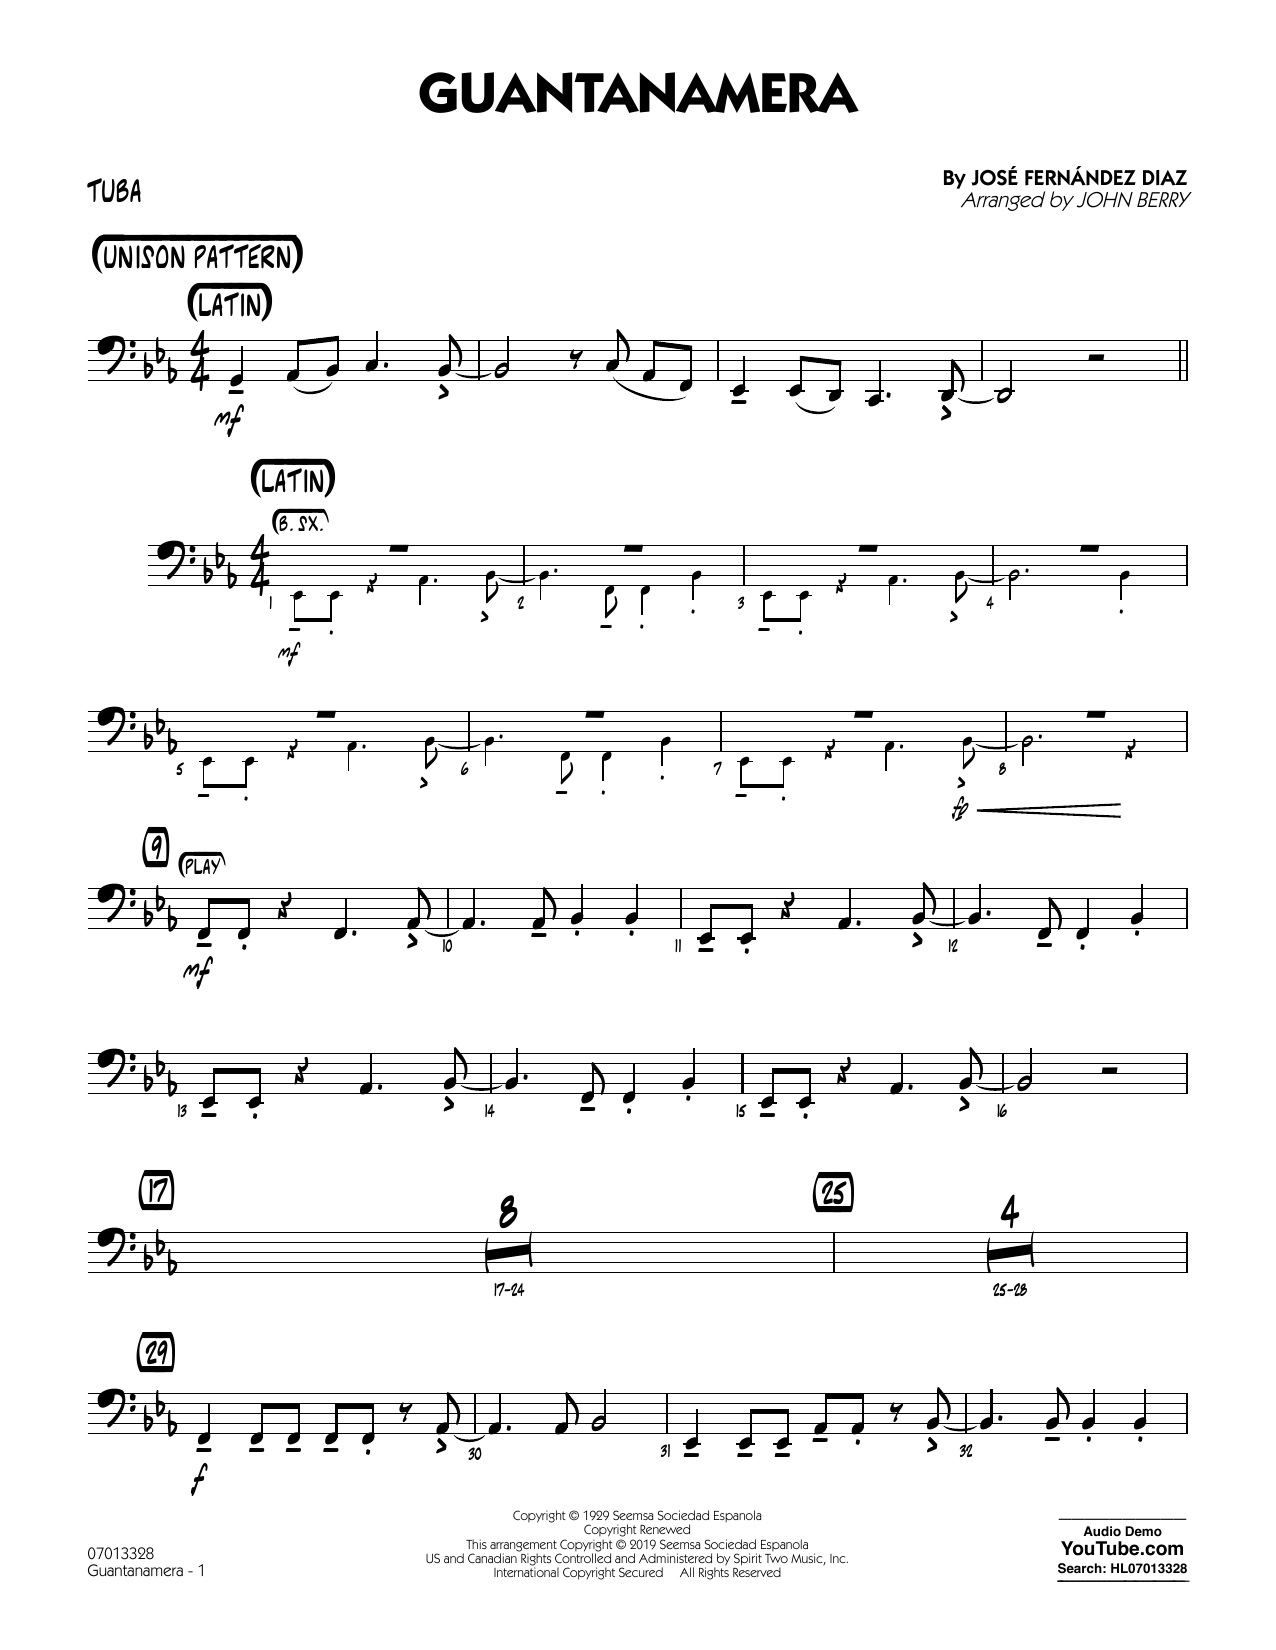 José Fernández Diaz Guantanamera (arr. John Berry) - Tuba Sheet Music Notes & Chords for Jazz Ensemble - Download or Print PDF